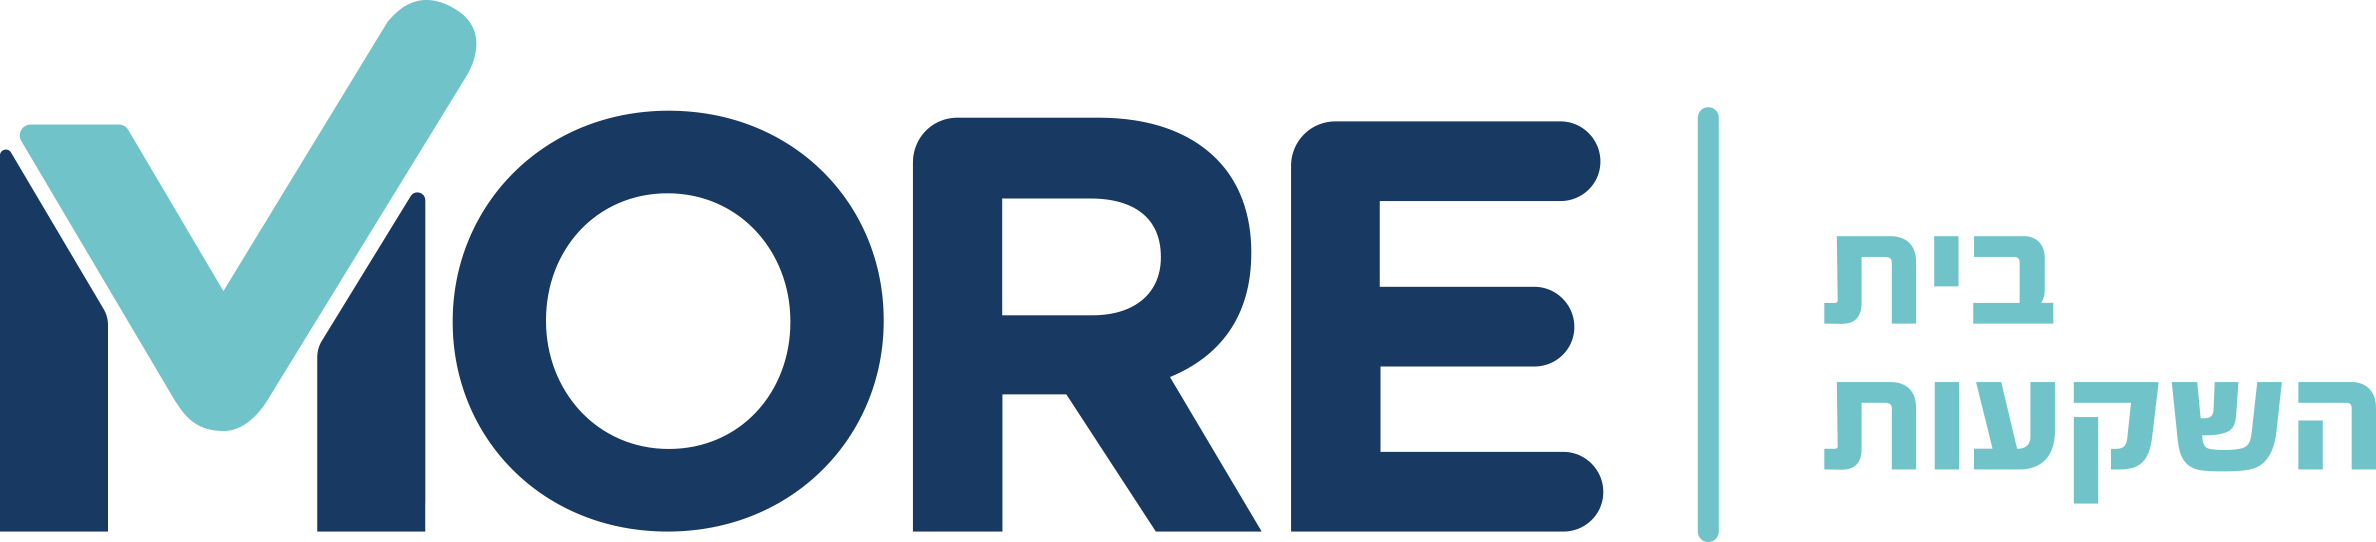 לוגו-בית-השקעות-1-1 (1)